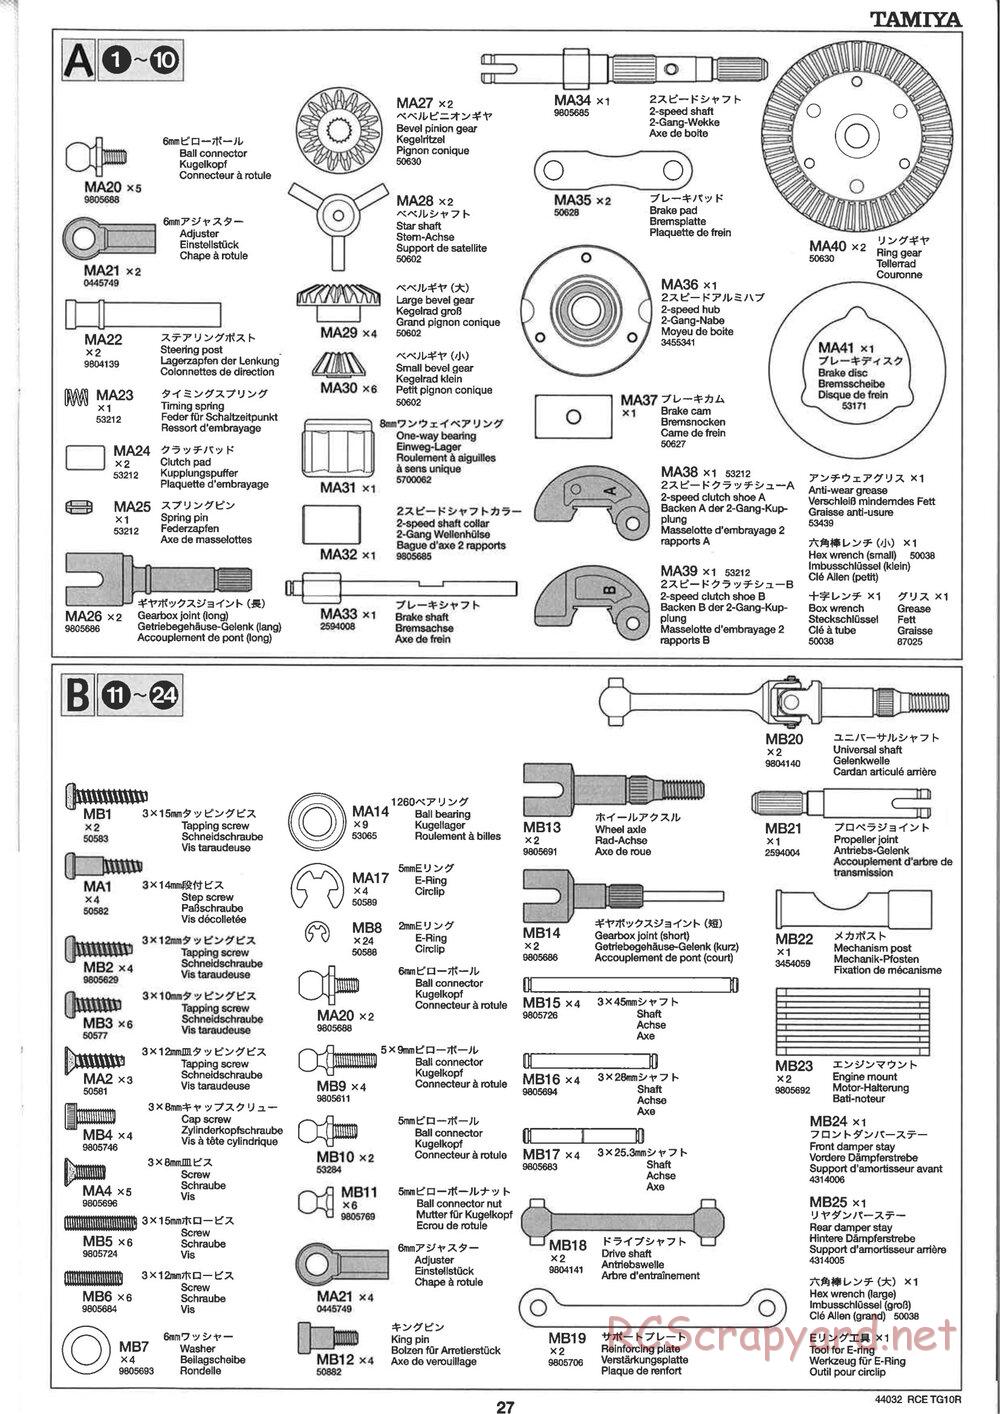 Tamiya - TG10R Chassis - Manual - Page 27